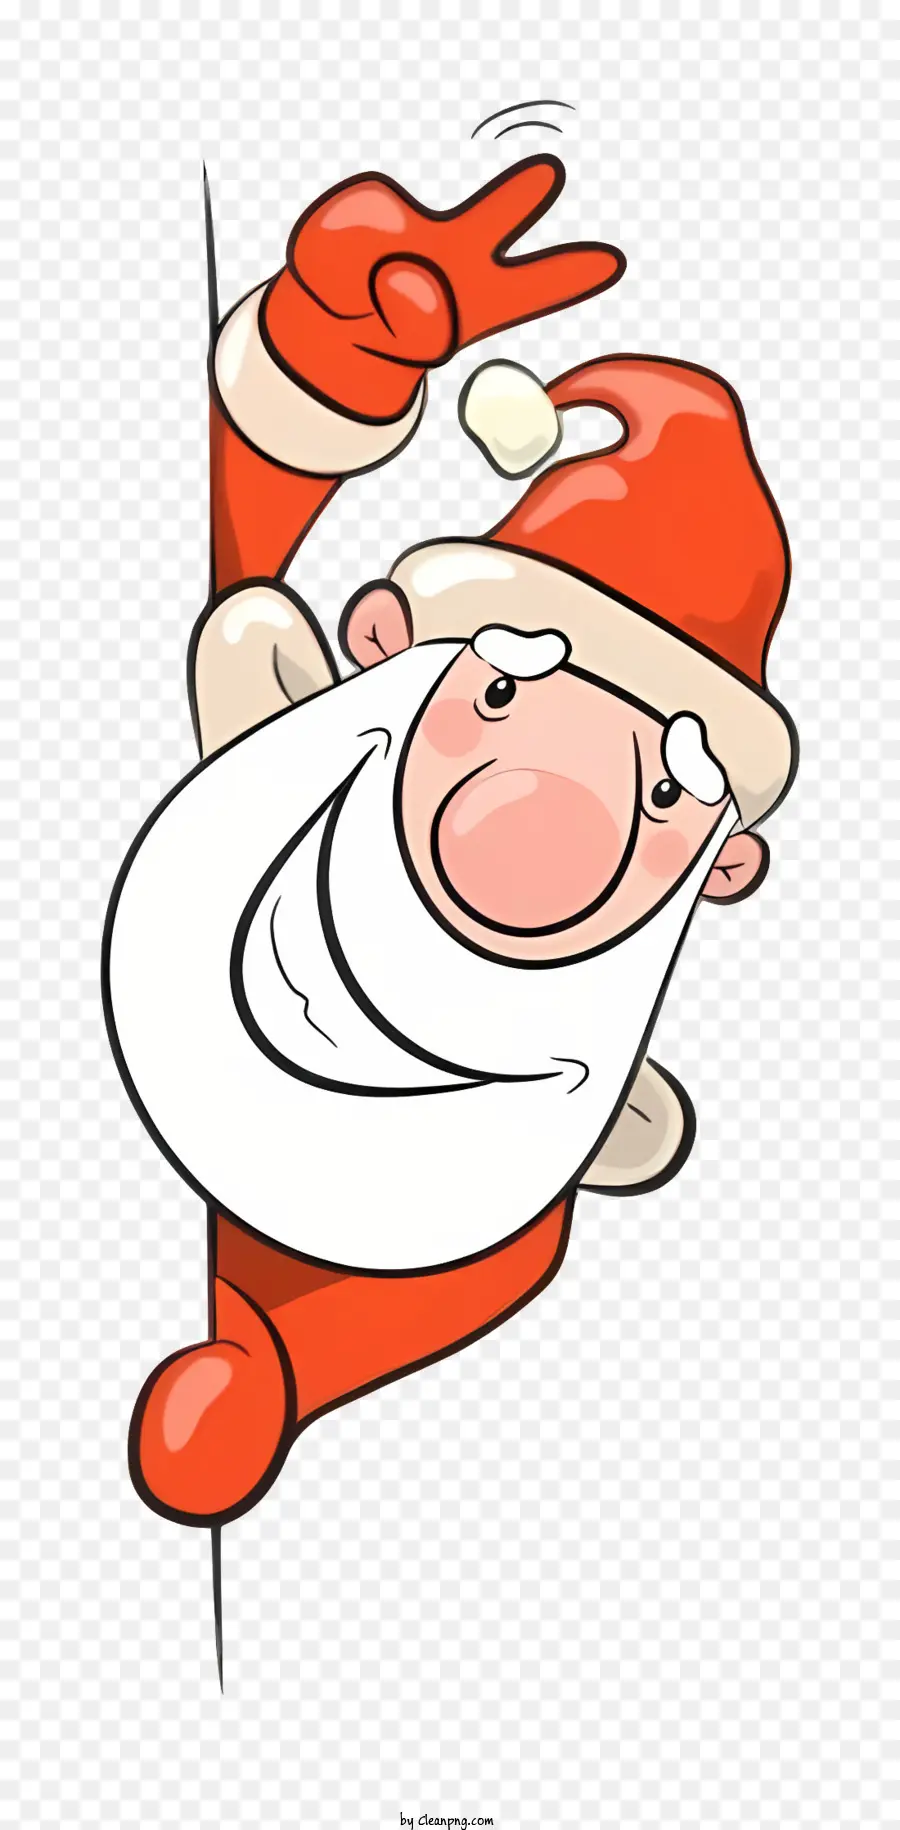 Santa Claus Hình Hòa bình Dấu hiệu hình ảnh giống như phim hoạt hình Dòng màu đen và trắng - Phim hoạt hình Santa giữ dấu hiệu hòa bình, gợi lên sự cổ vũ